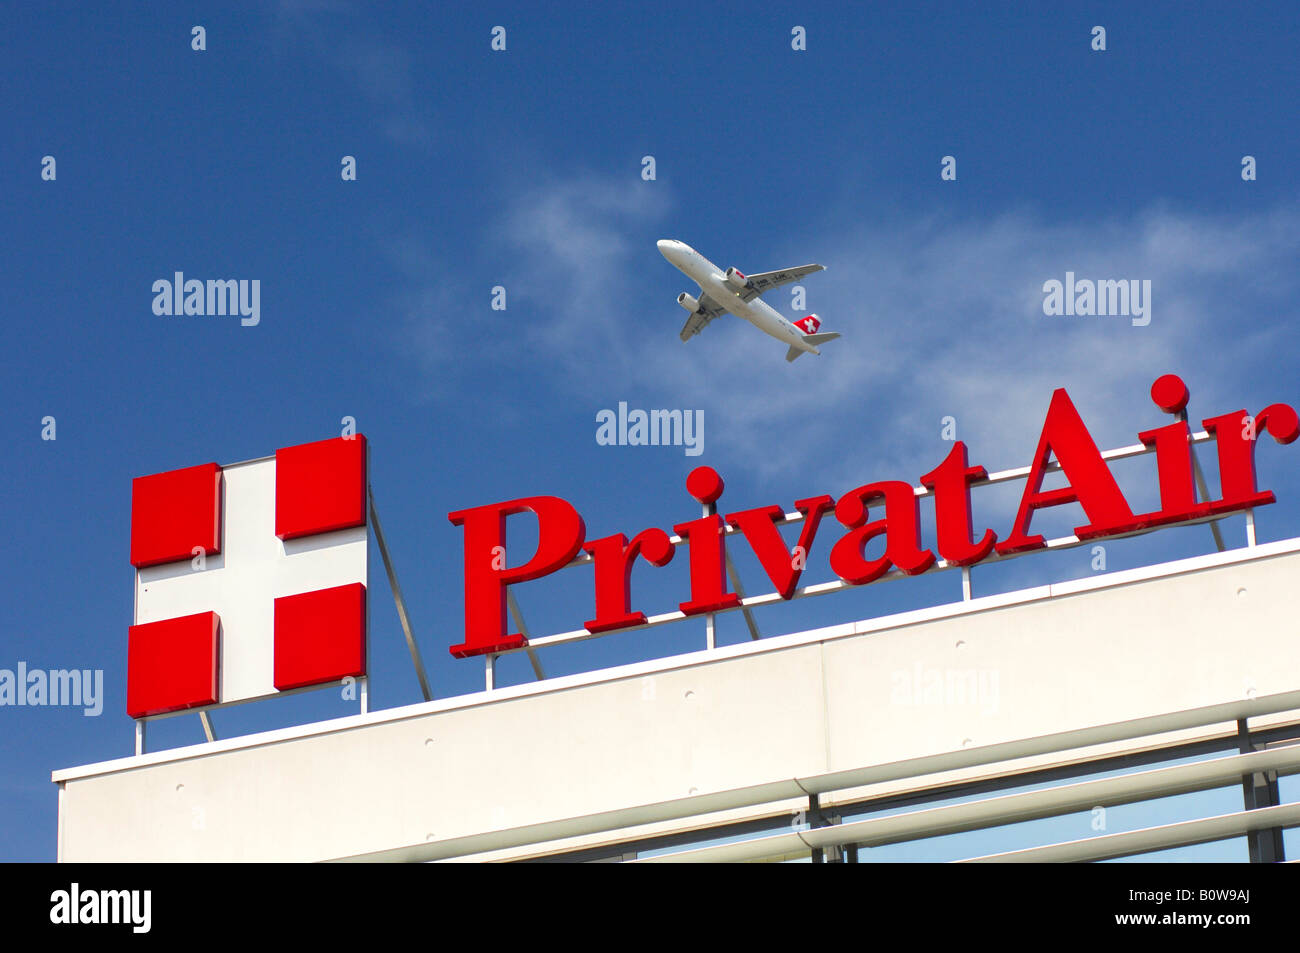 Aeromobili battenti oltre la sede della compagnia aerea PrivatAir, Ginevra, Svizzera, Europa Foto Stock